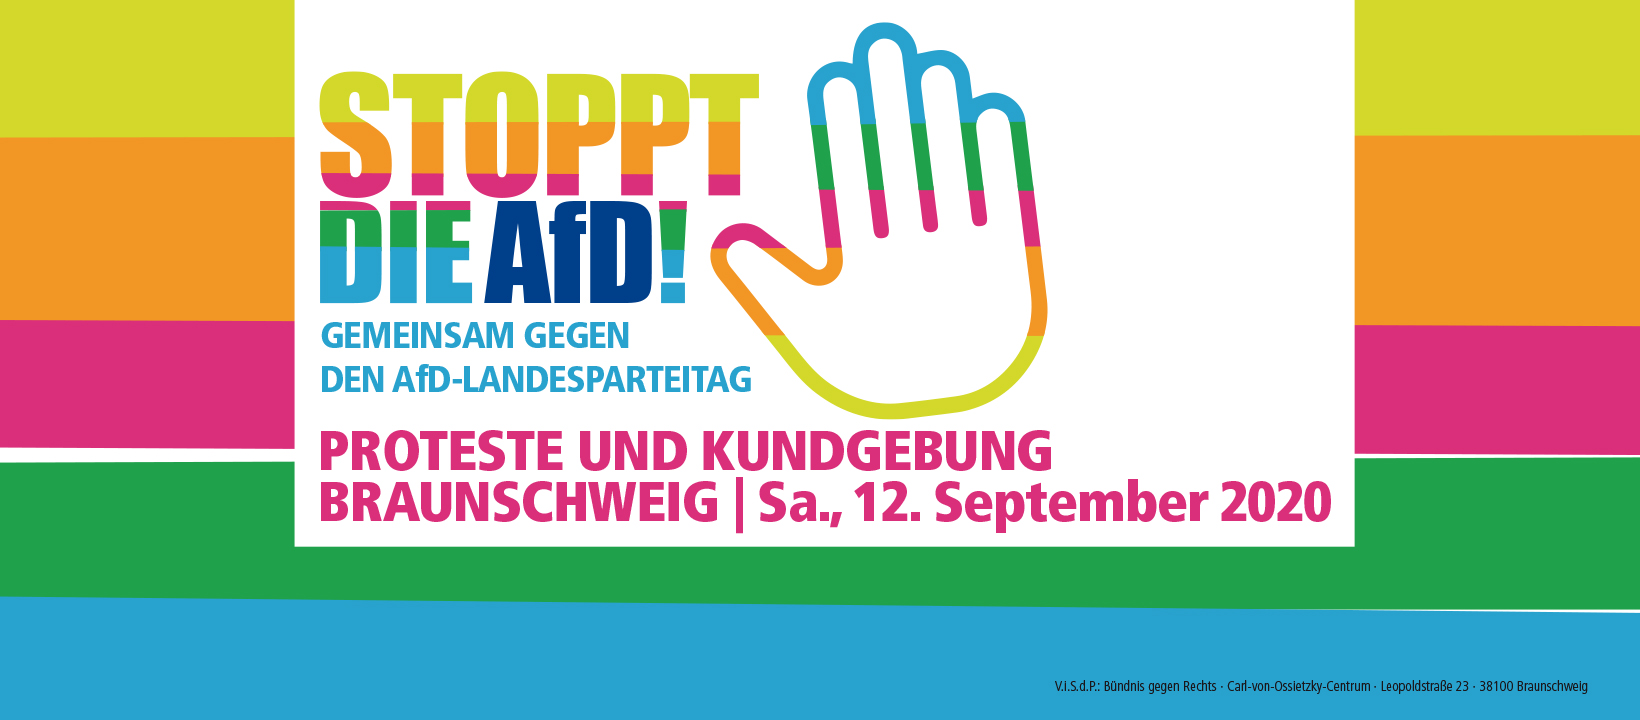 Stoppt die AfD! Gemeinsam gegen den AfD – Landesparteitag in Braunschweig!